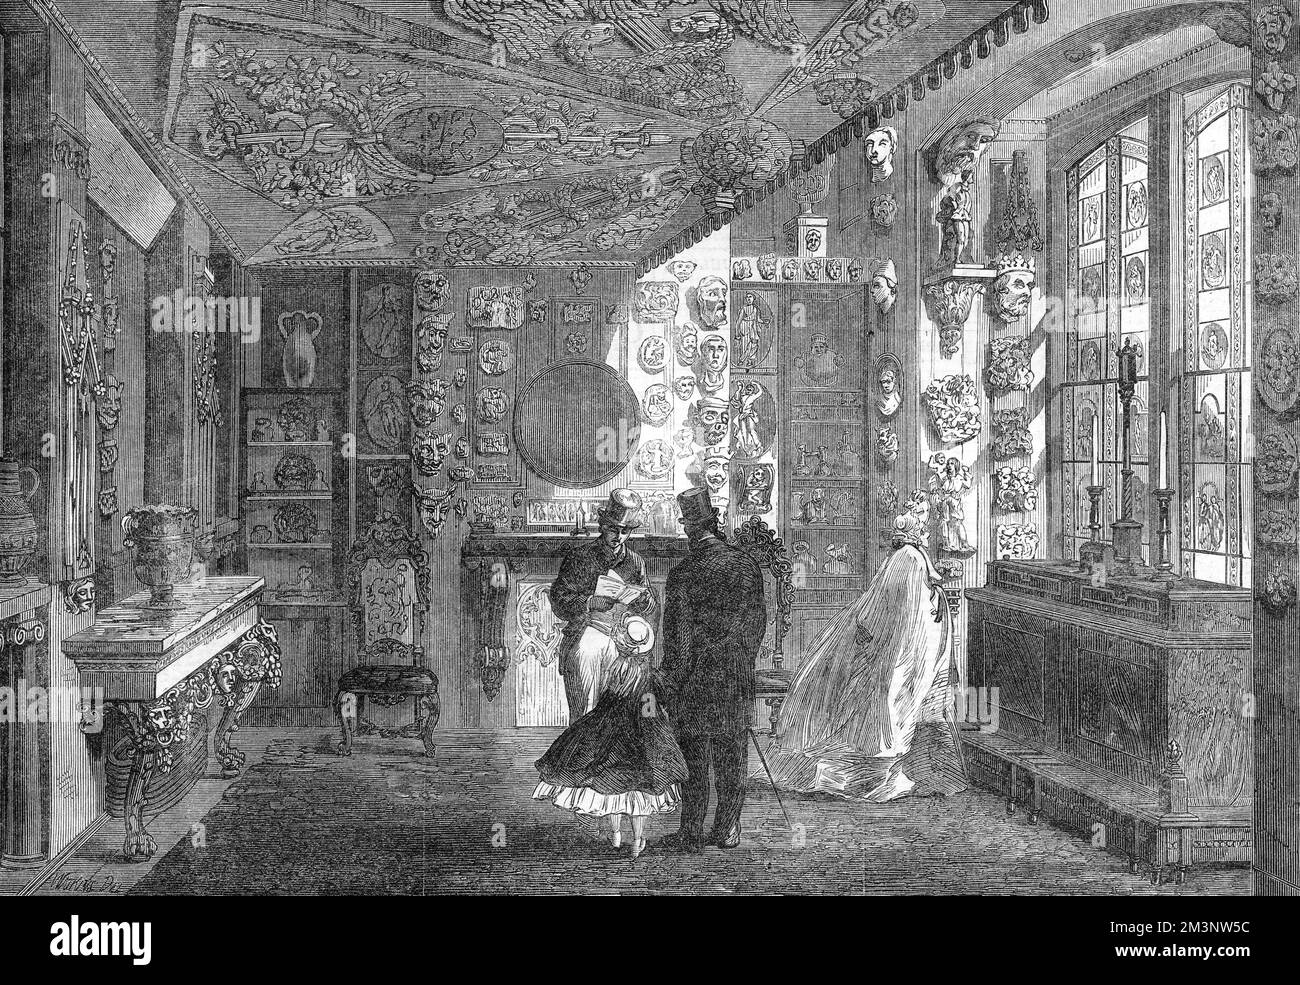 Musée Sir John Soanes à Lincoln Inn Fields, 1864. Les visiteurs victoriens admirent le salon des Monks. Date: 1864 Banque D'Images